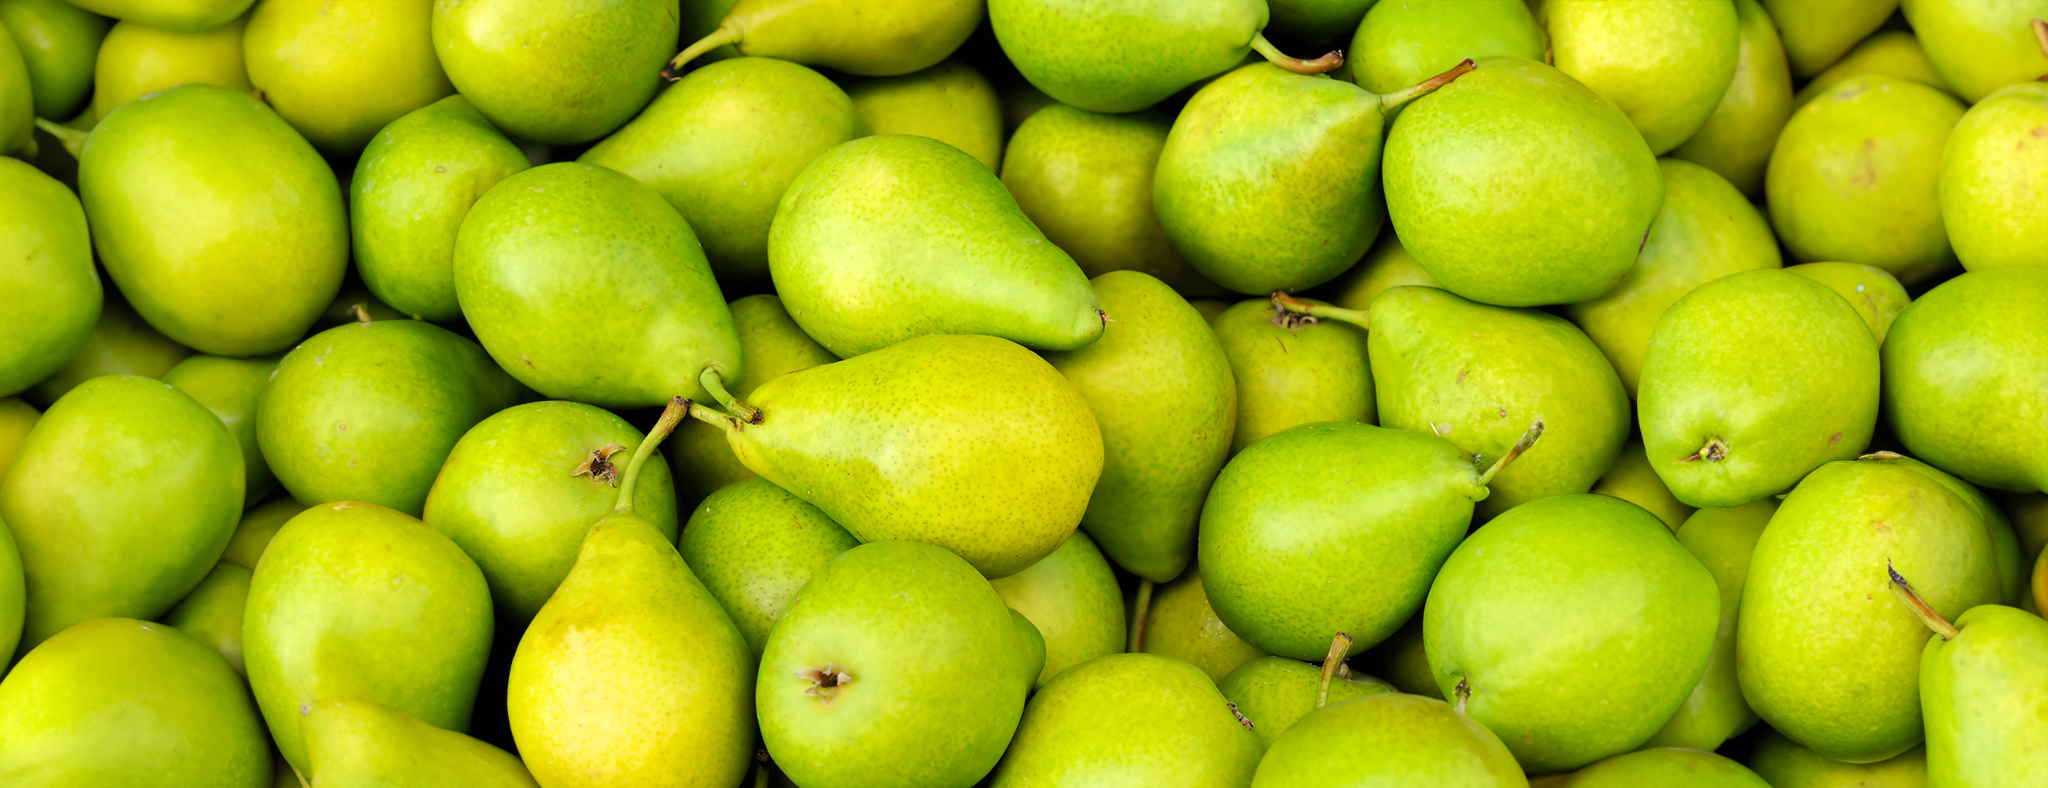 Wholesale pears in bulk from Turkey